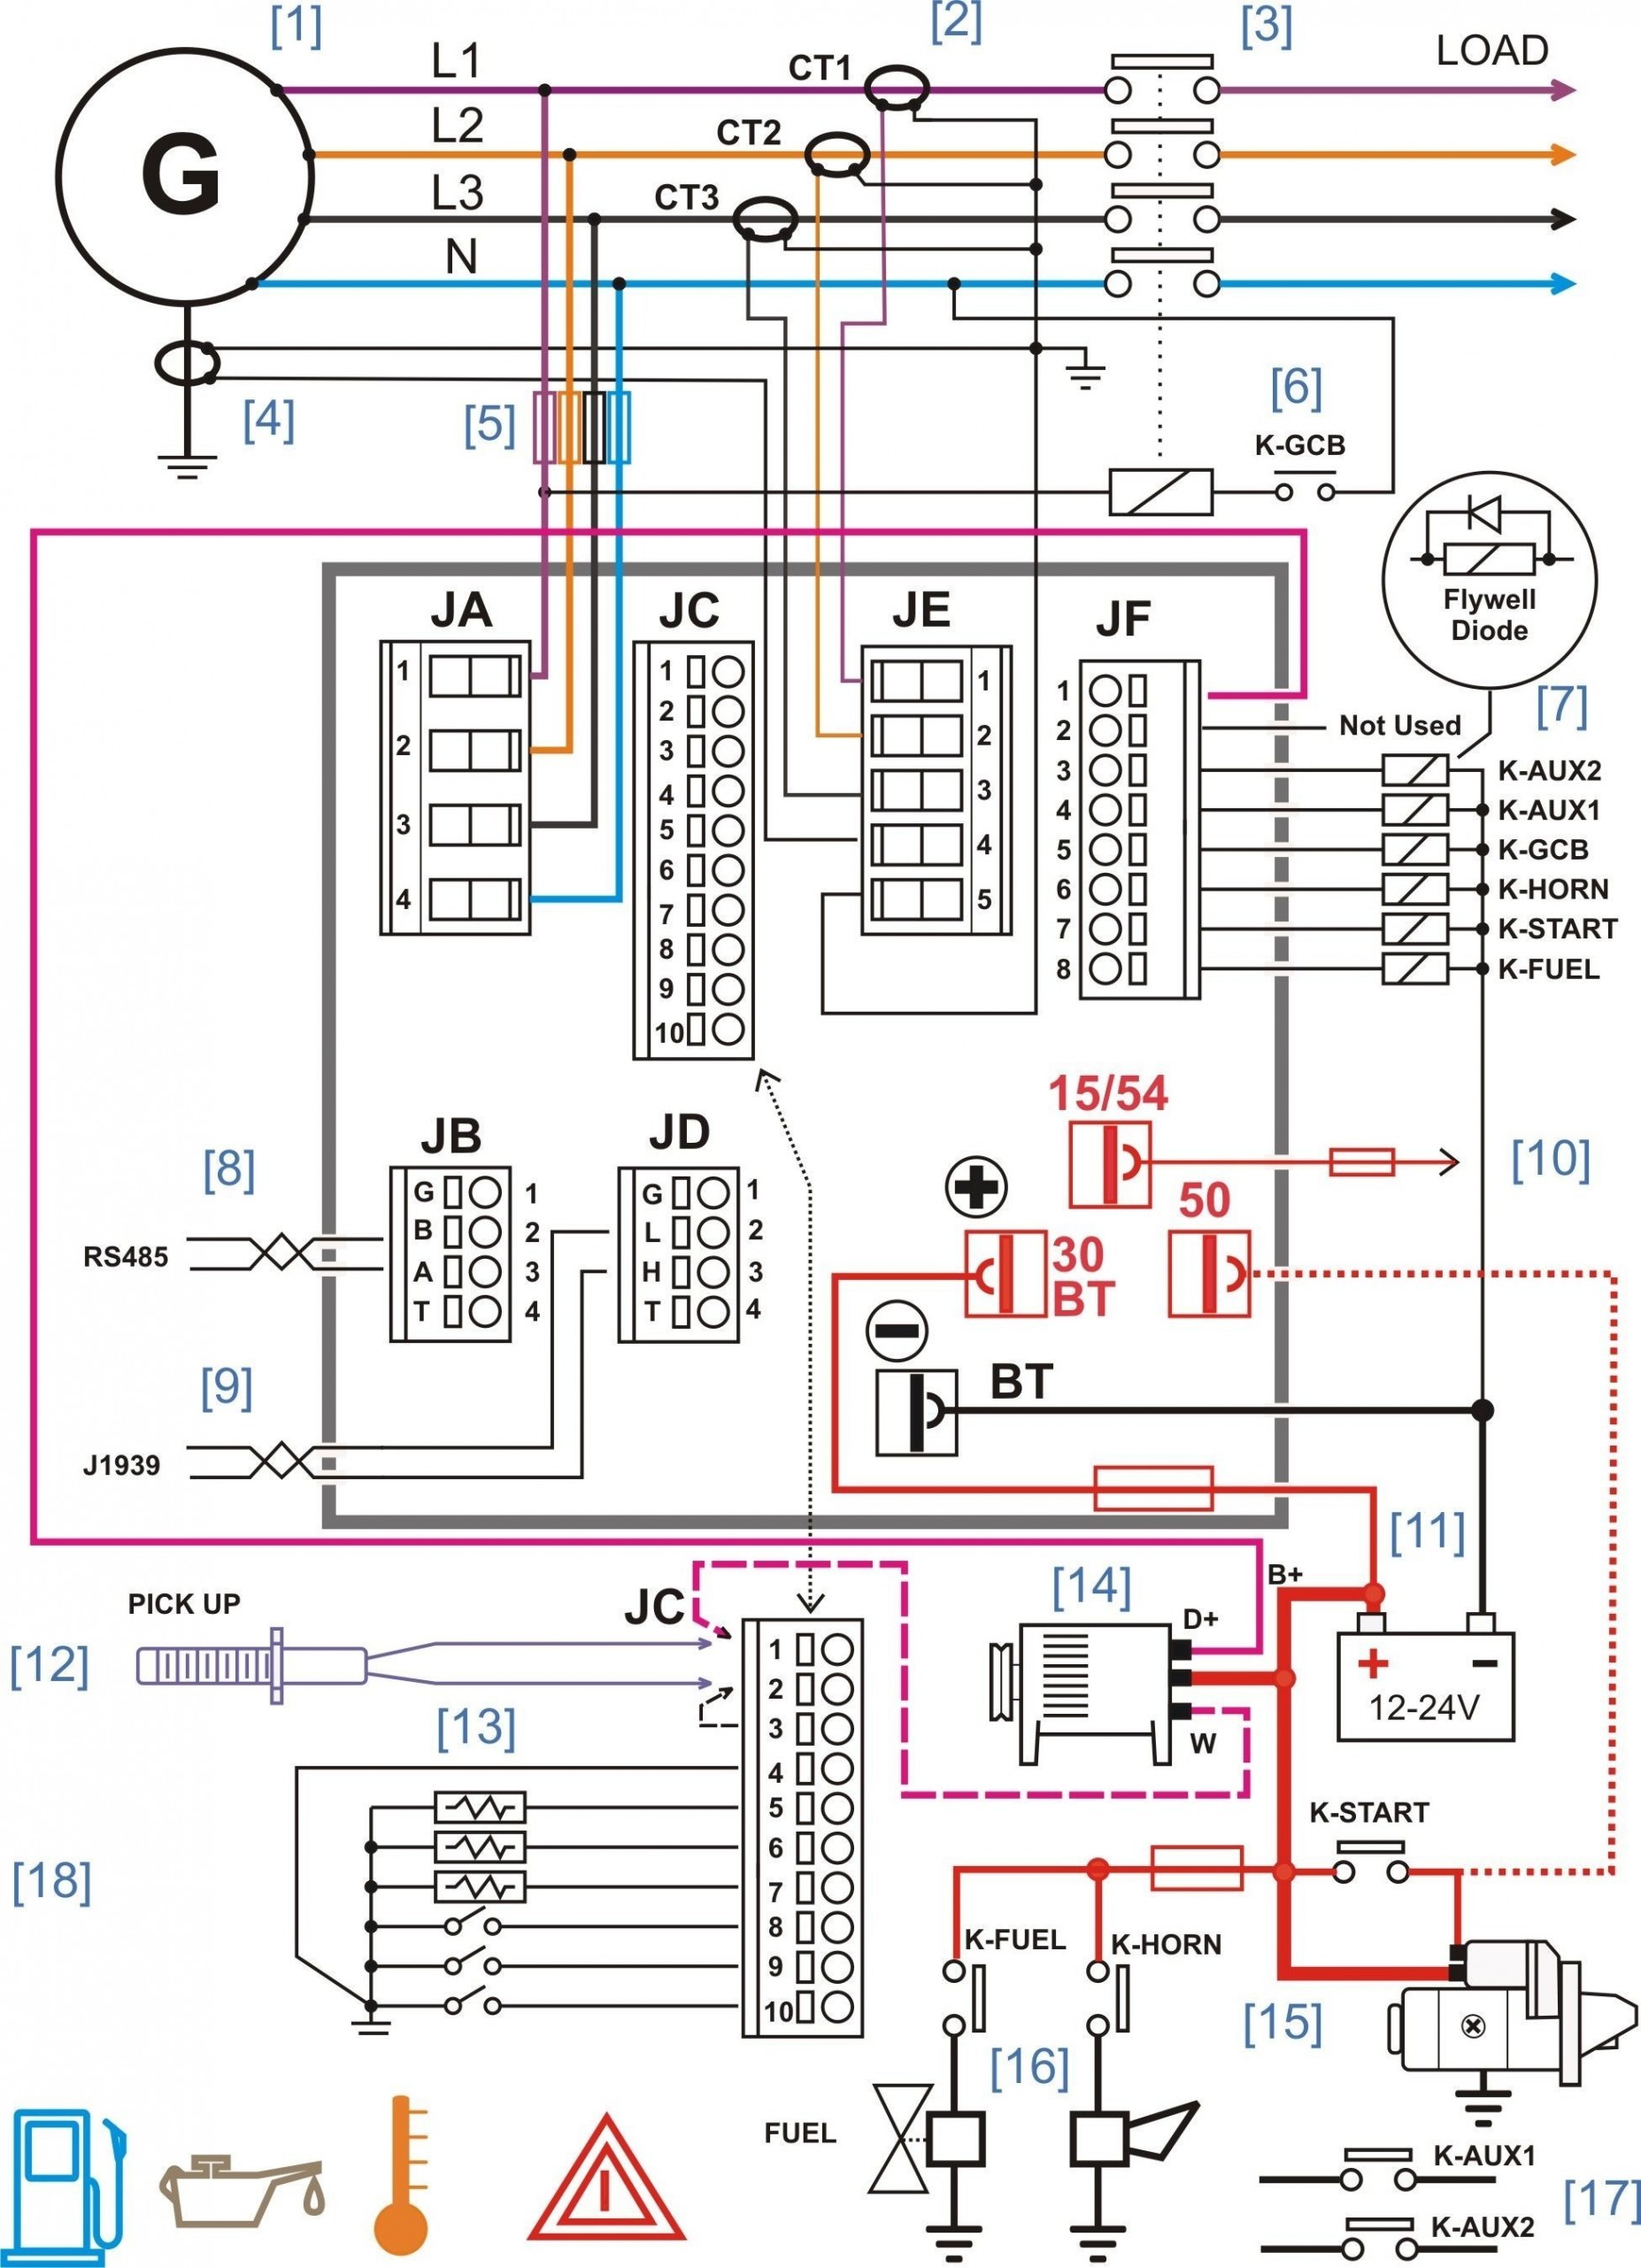 Circuit Diagram Maker – Diagram Creator Free Best Circuit Diagram Creator New Boss Od 2